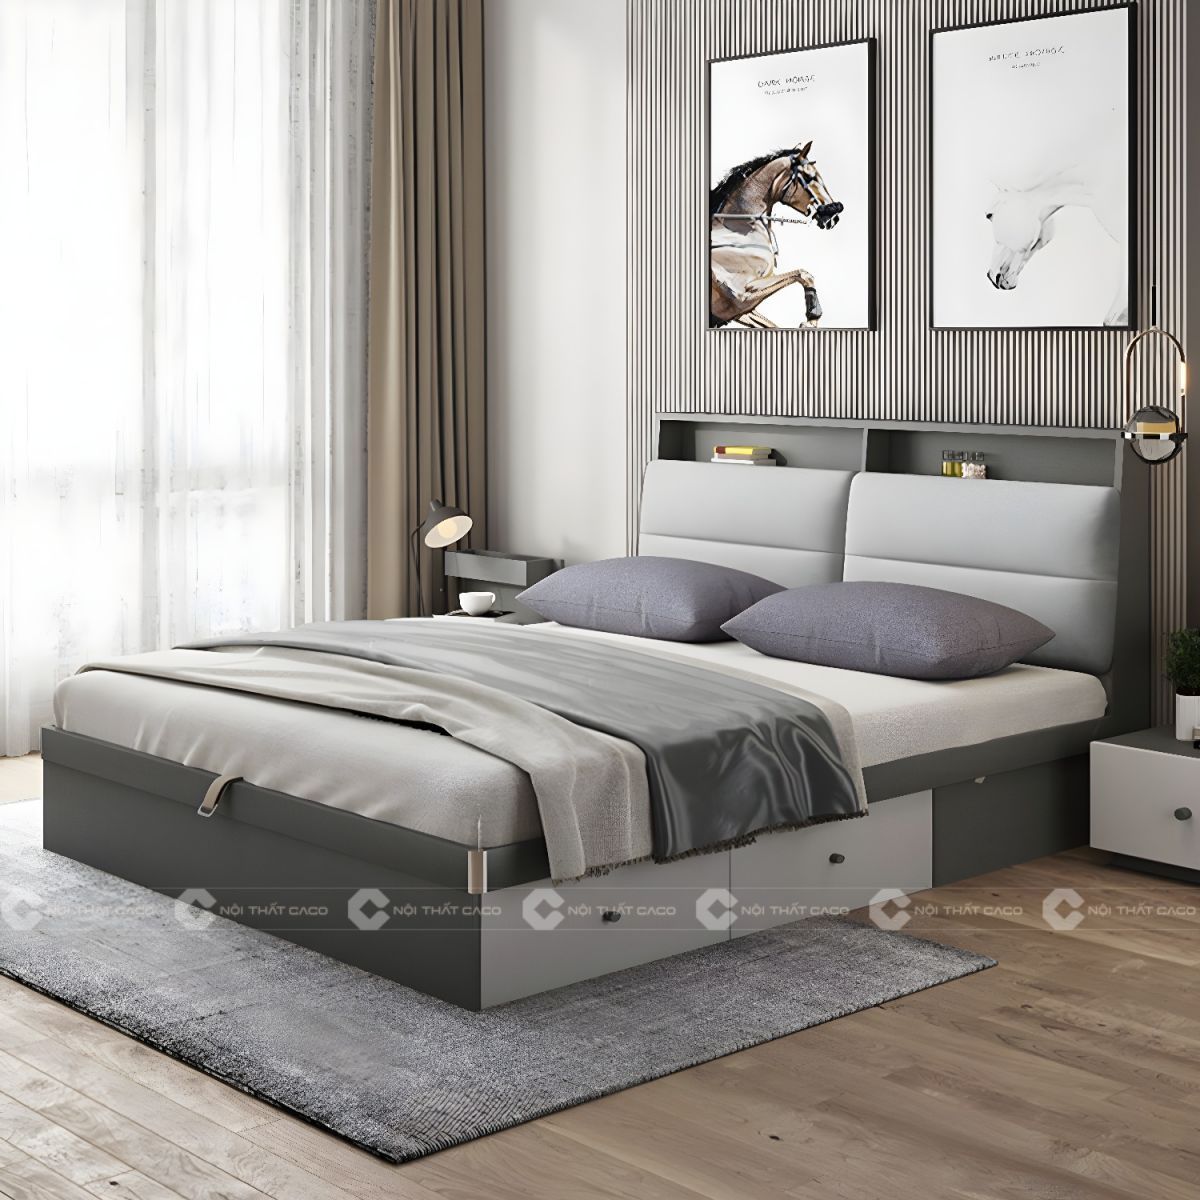 Giường ngủ gỗ công nghiệp với thiết kế thanh lịch sang trọng